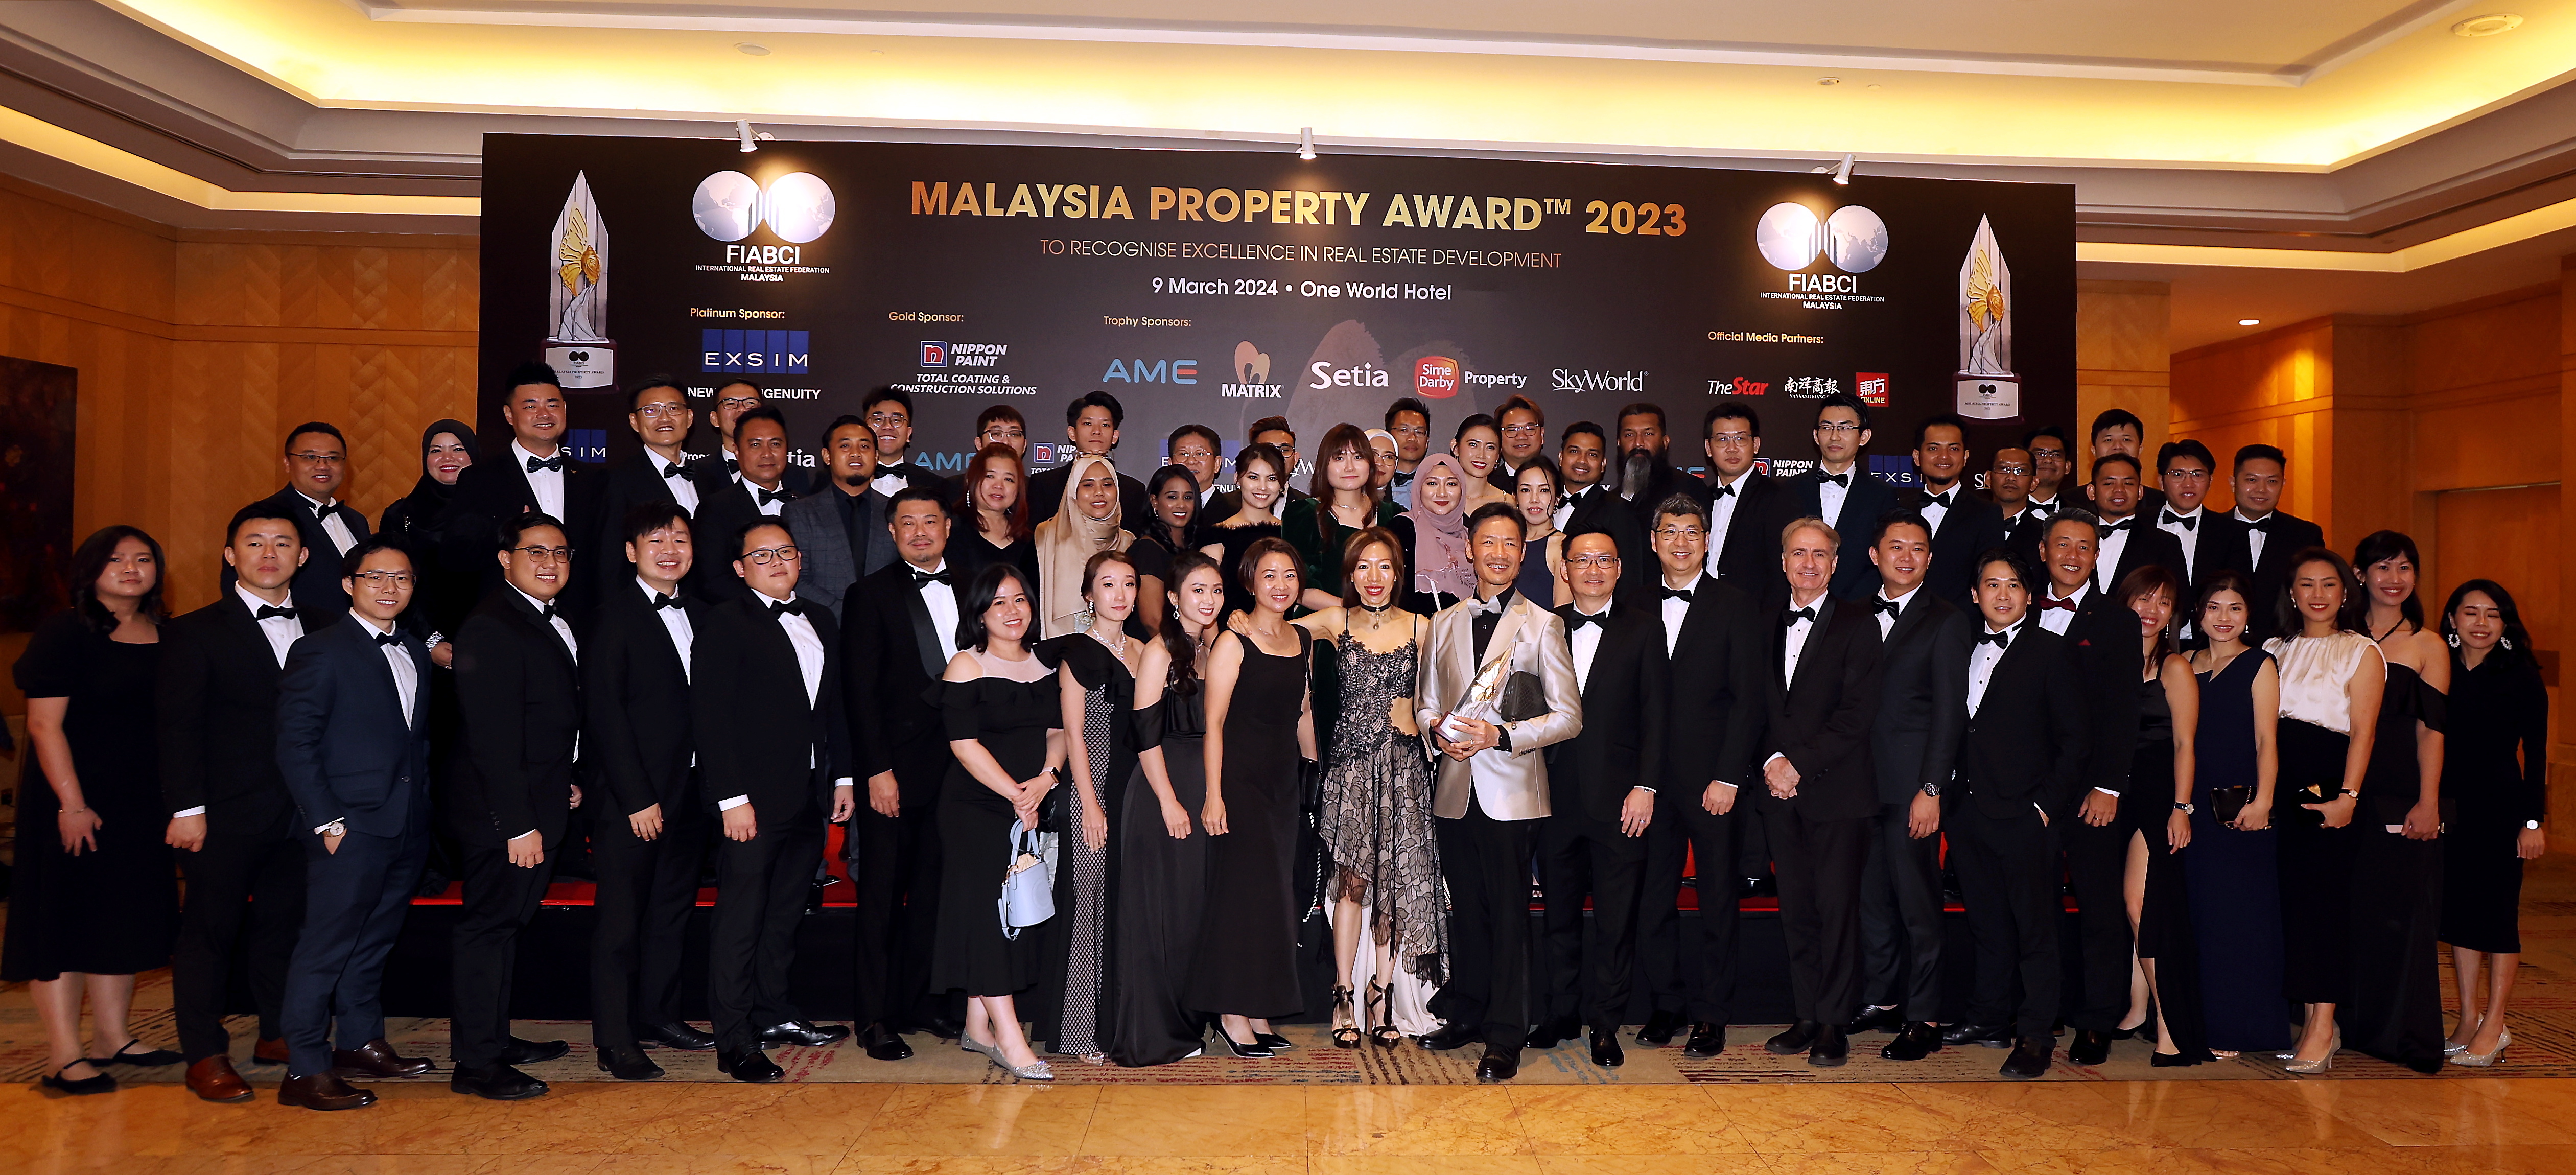 FIABCI Malaysia Property Awards 2023 2